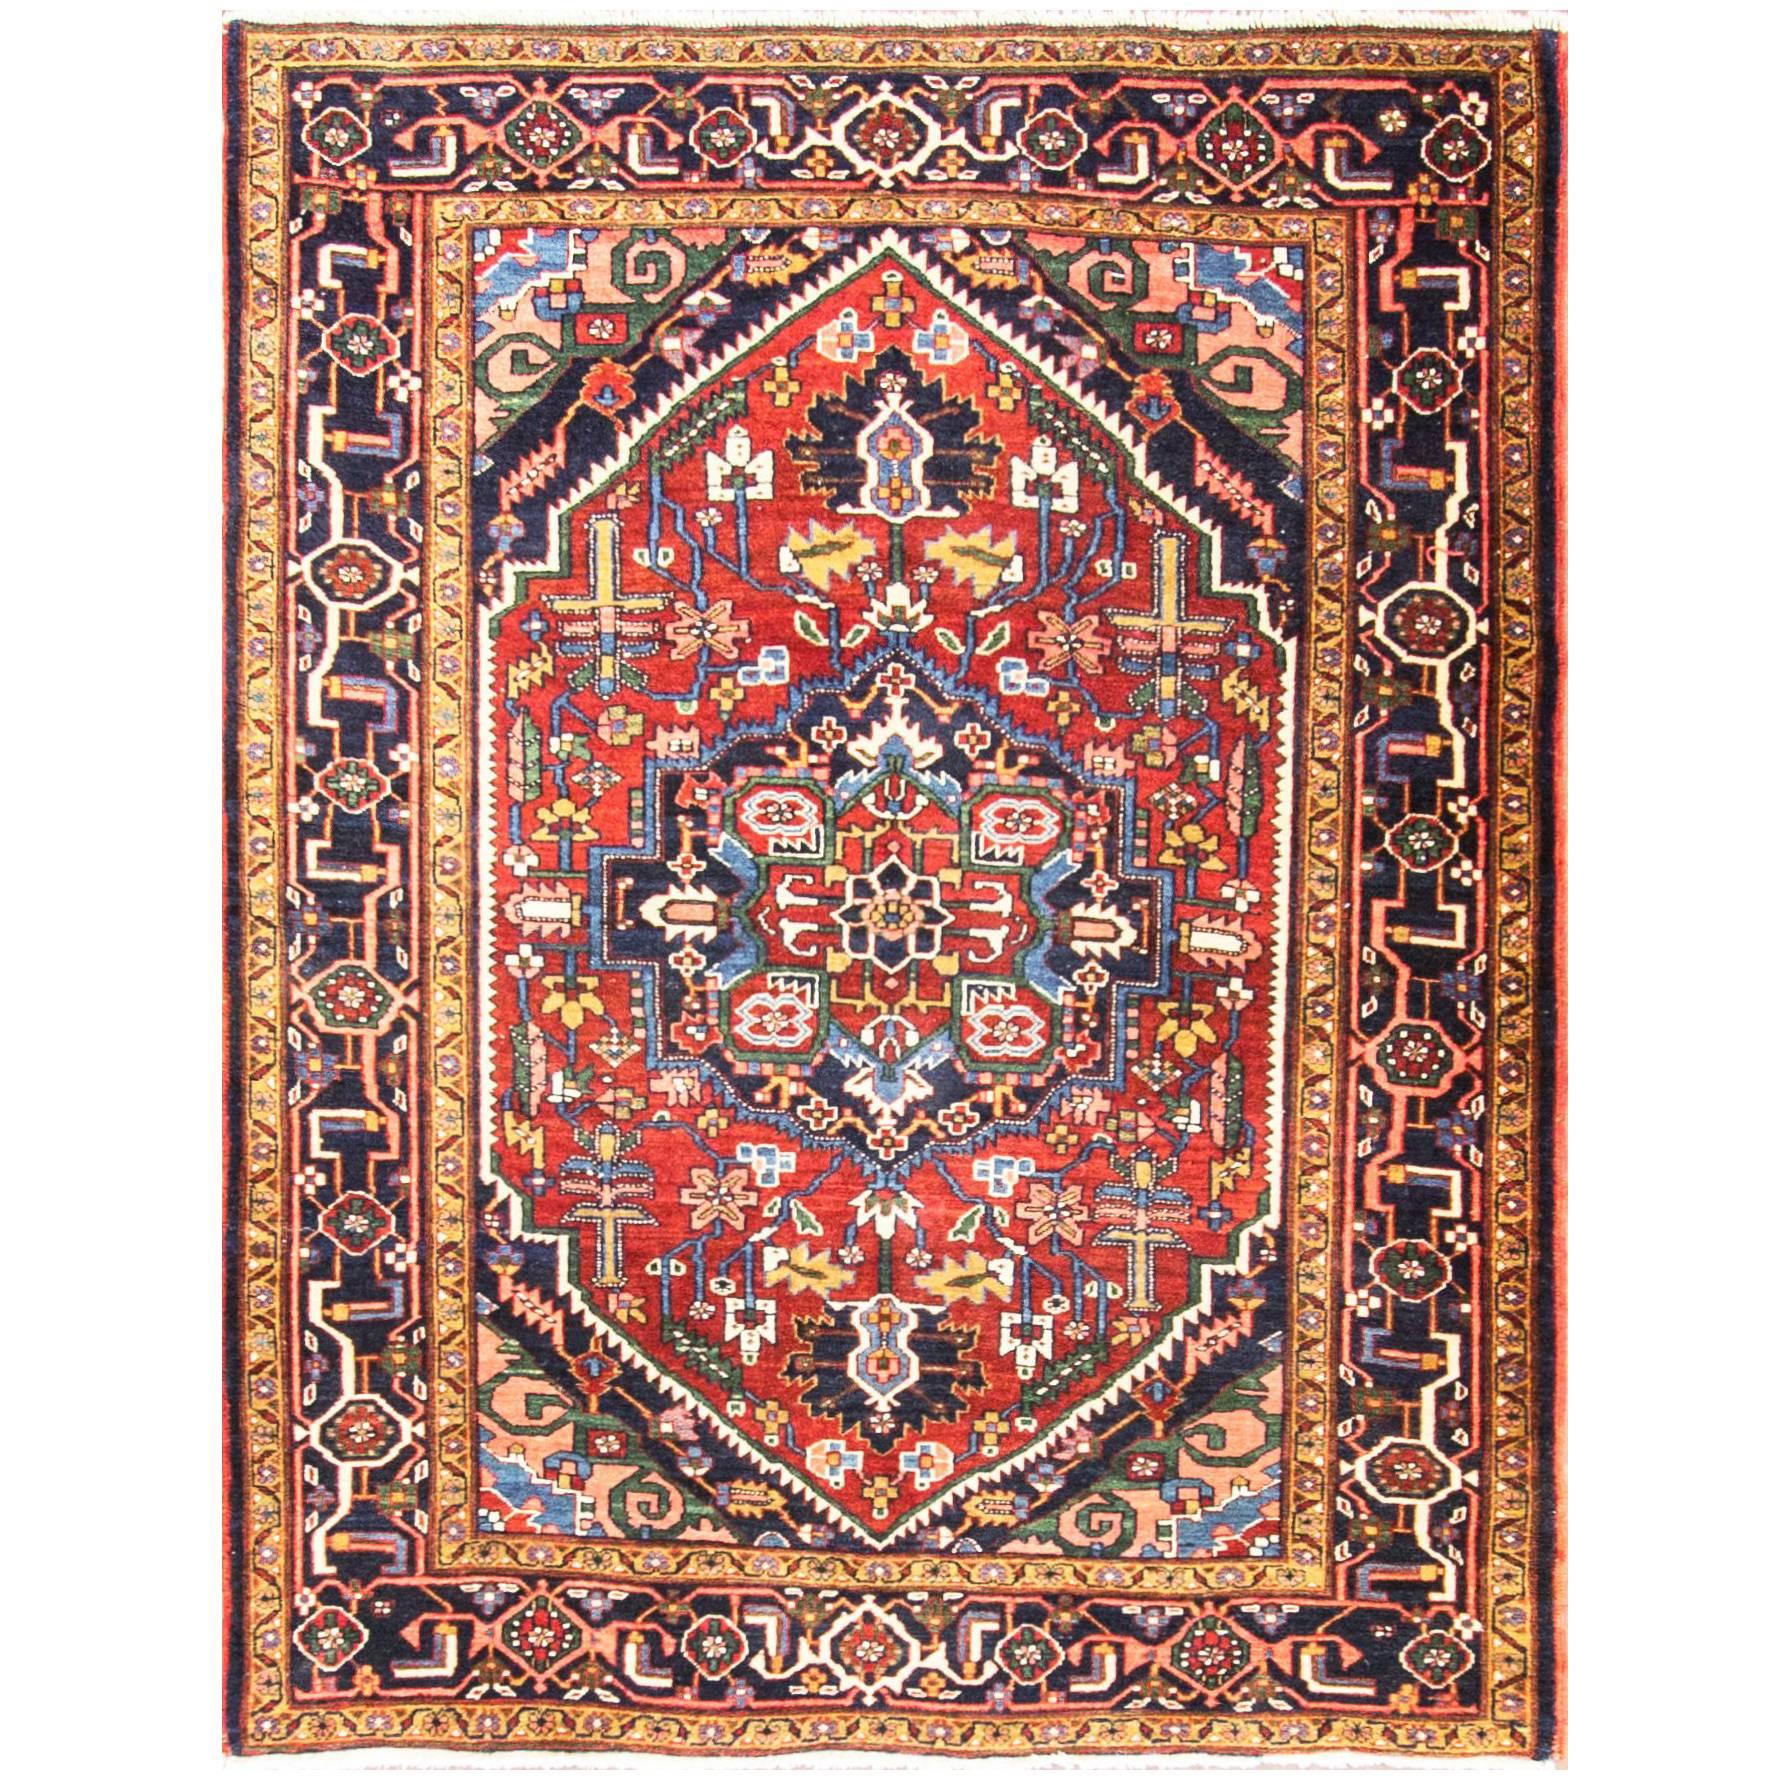 Antique Persian Heriz Rug, 4'10" x 6'3"